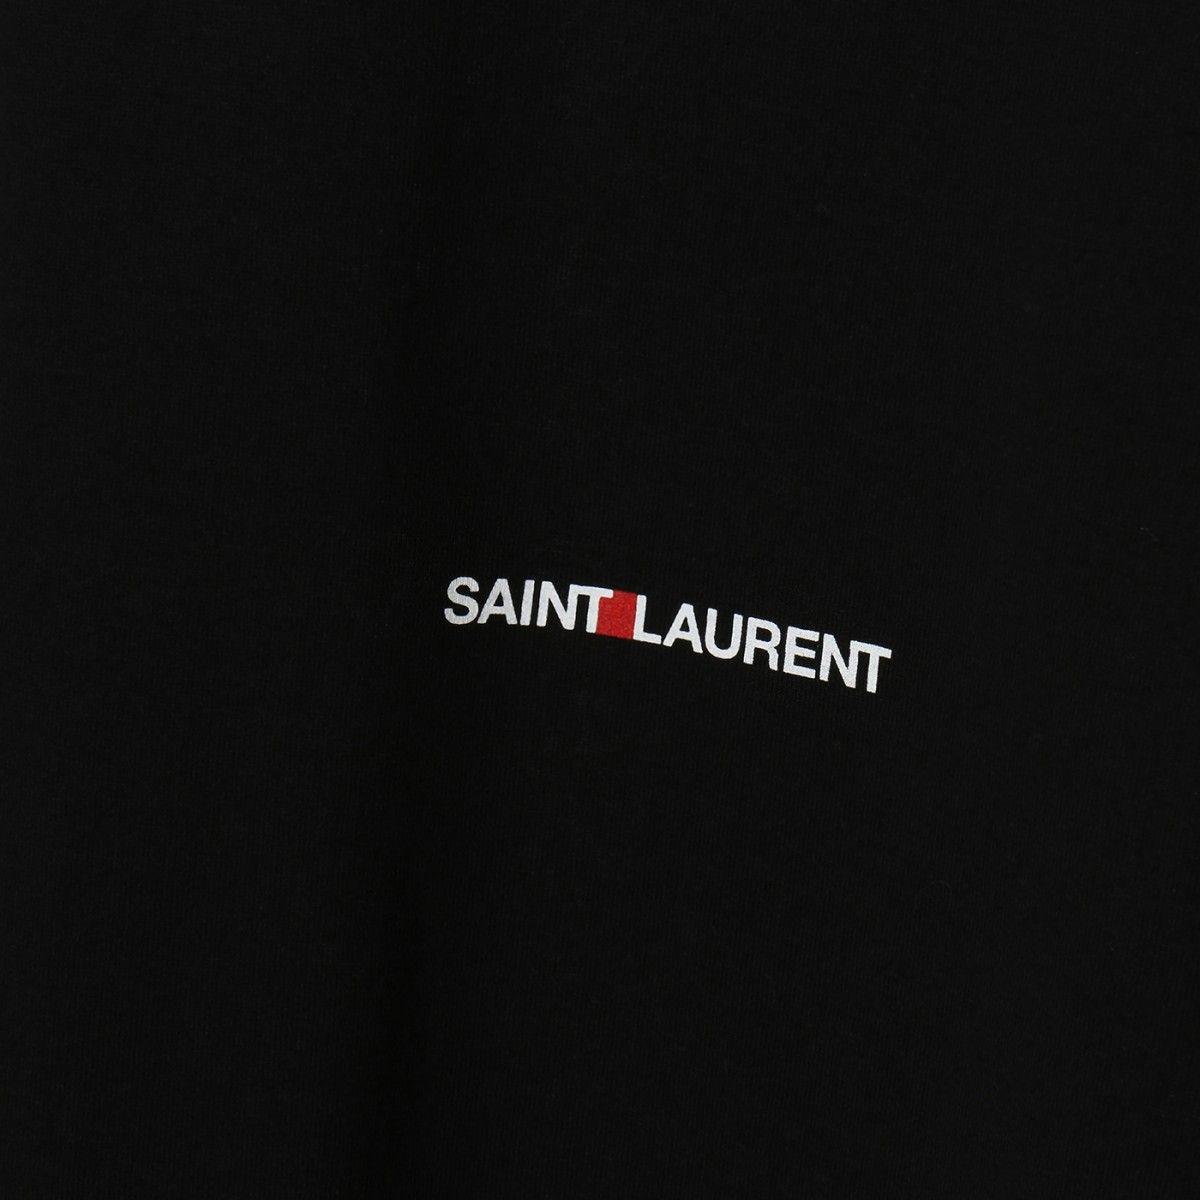 Saint Laurent Logo - Saint Laurent logo t shirt